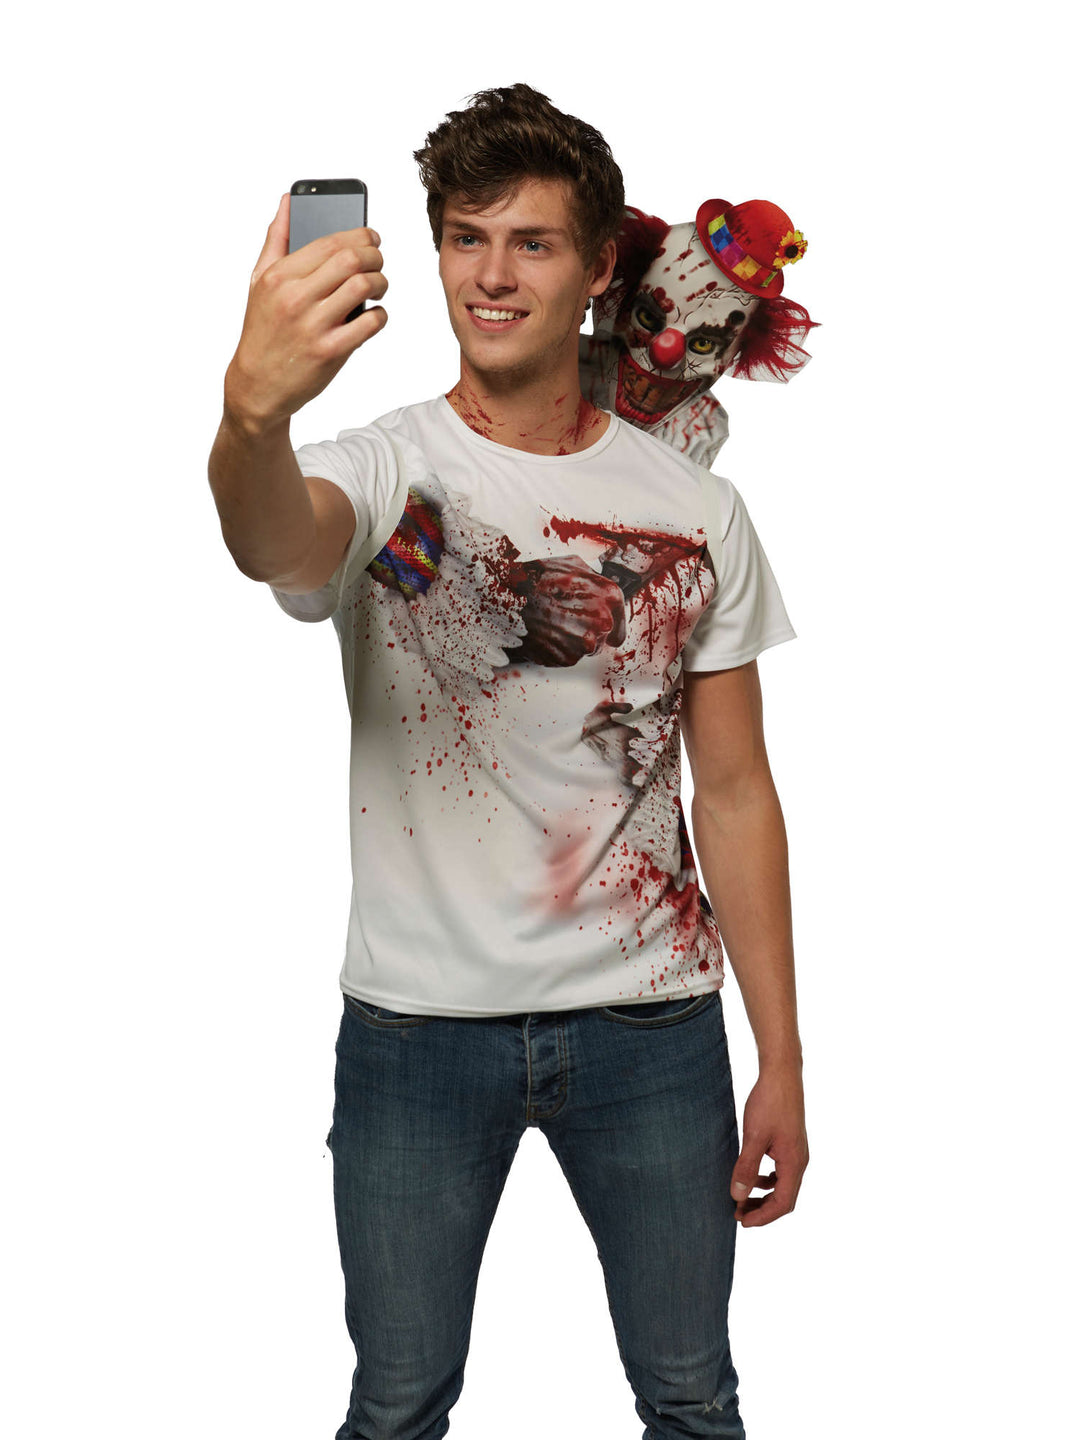 Shocker Clown Selfie T Shirt Costume_1